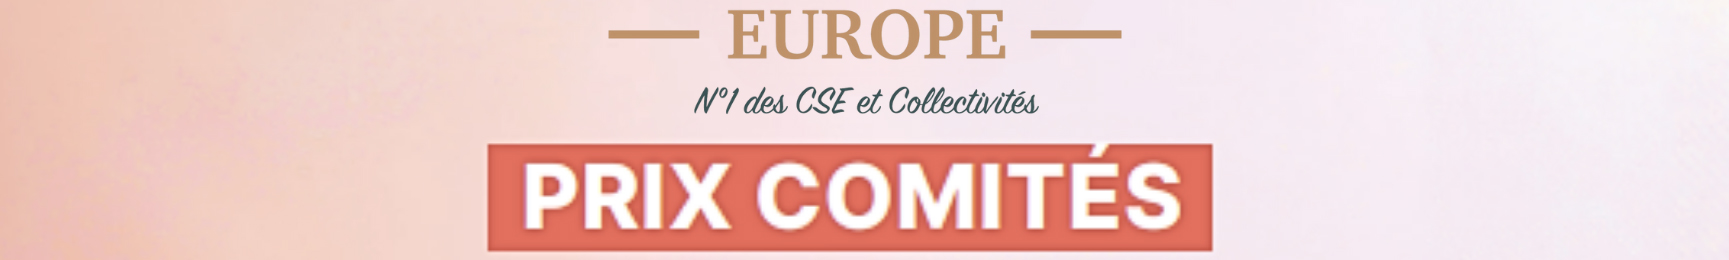 LA PARFUMERIE EUROPE / N°1 des CSE et Collectivités